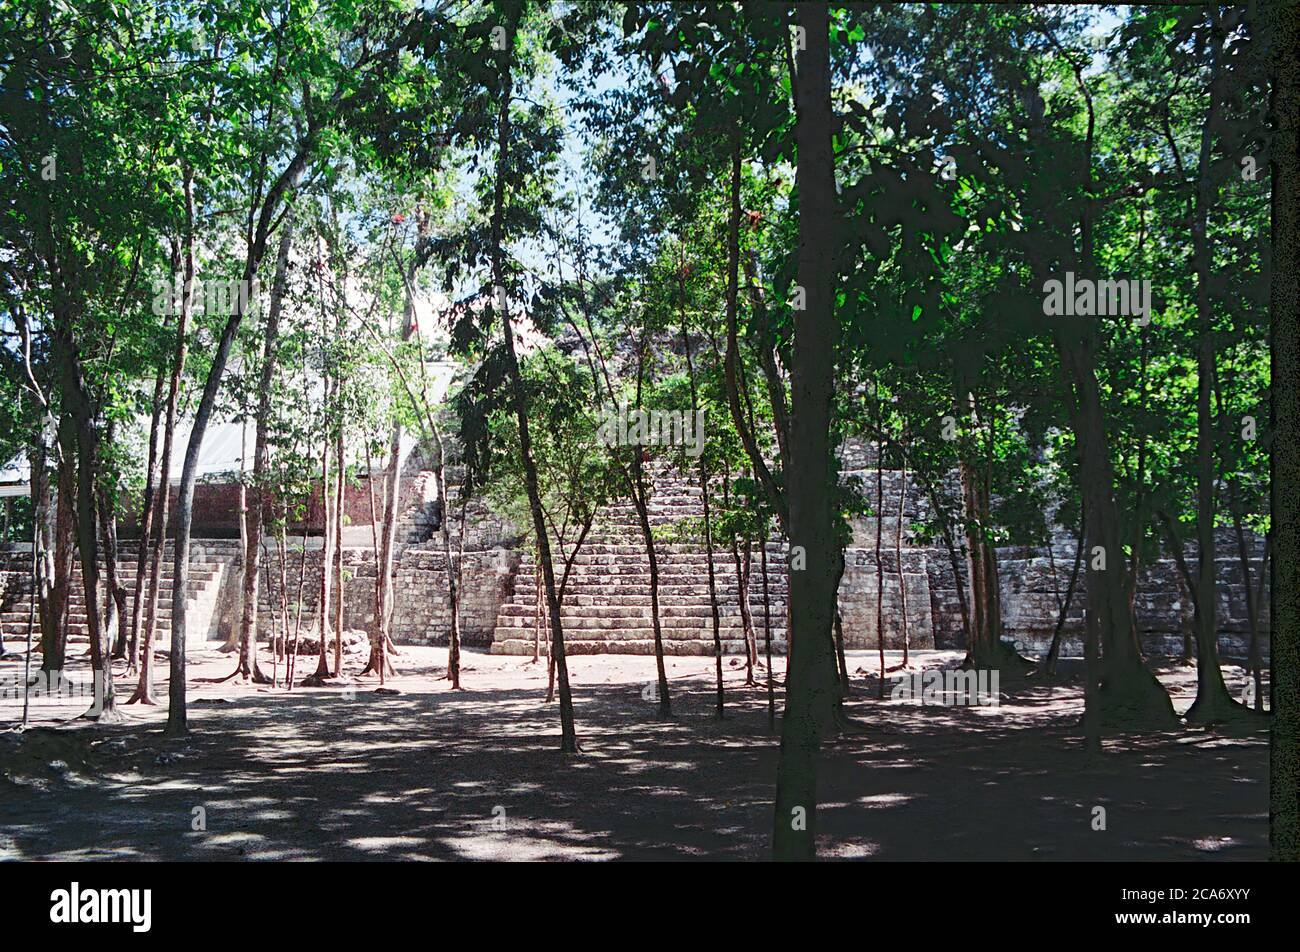 Struktur I. auf der linken Seite ist das Metalldach von Archäologen verwendet, um den berühmten Fries zu schützen. Balamku Maya Ruinen. Campeche, Mexiko. Vintage Film Bild - ca. 1990. Stockfoto